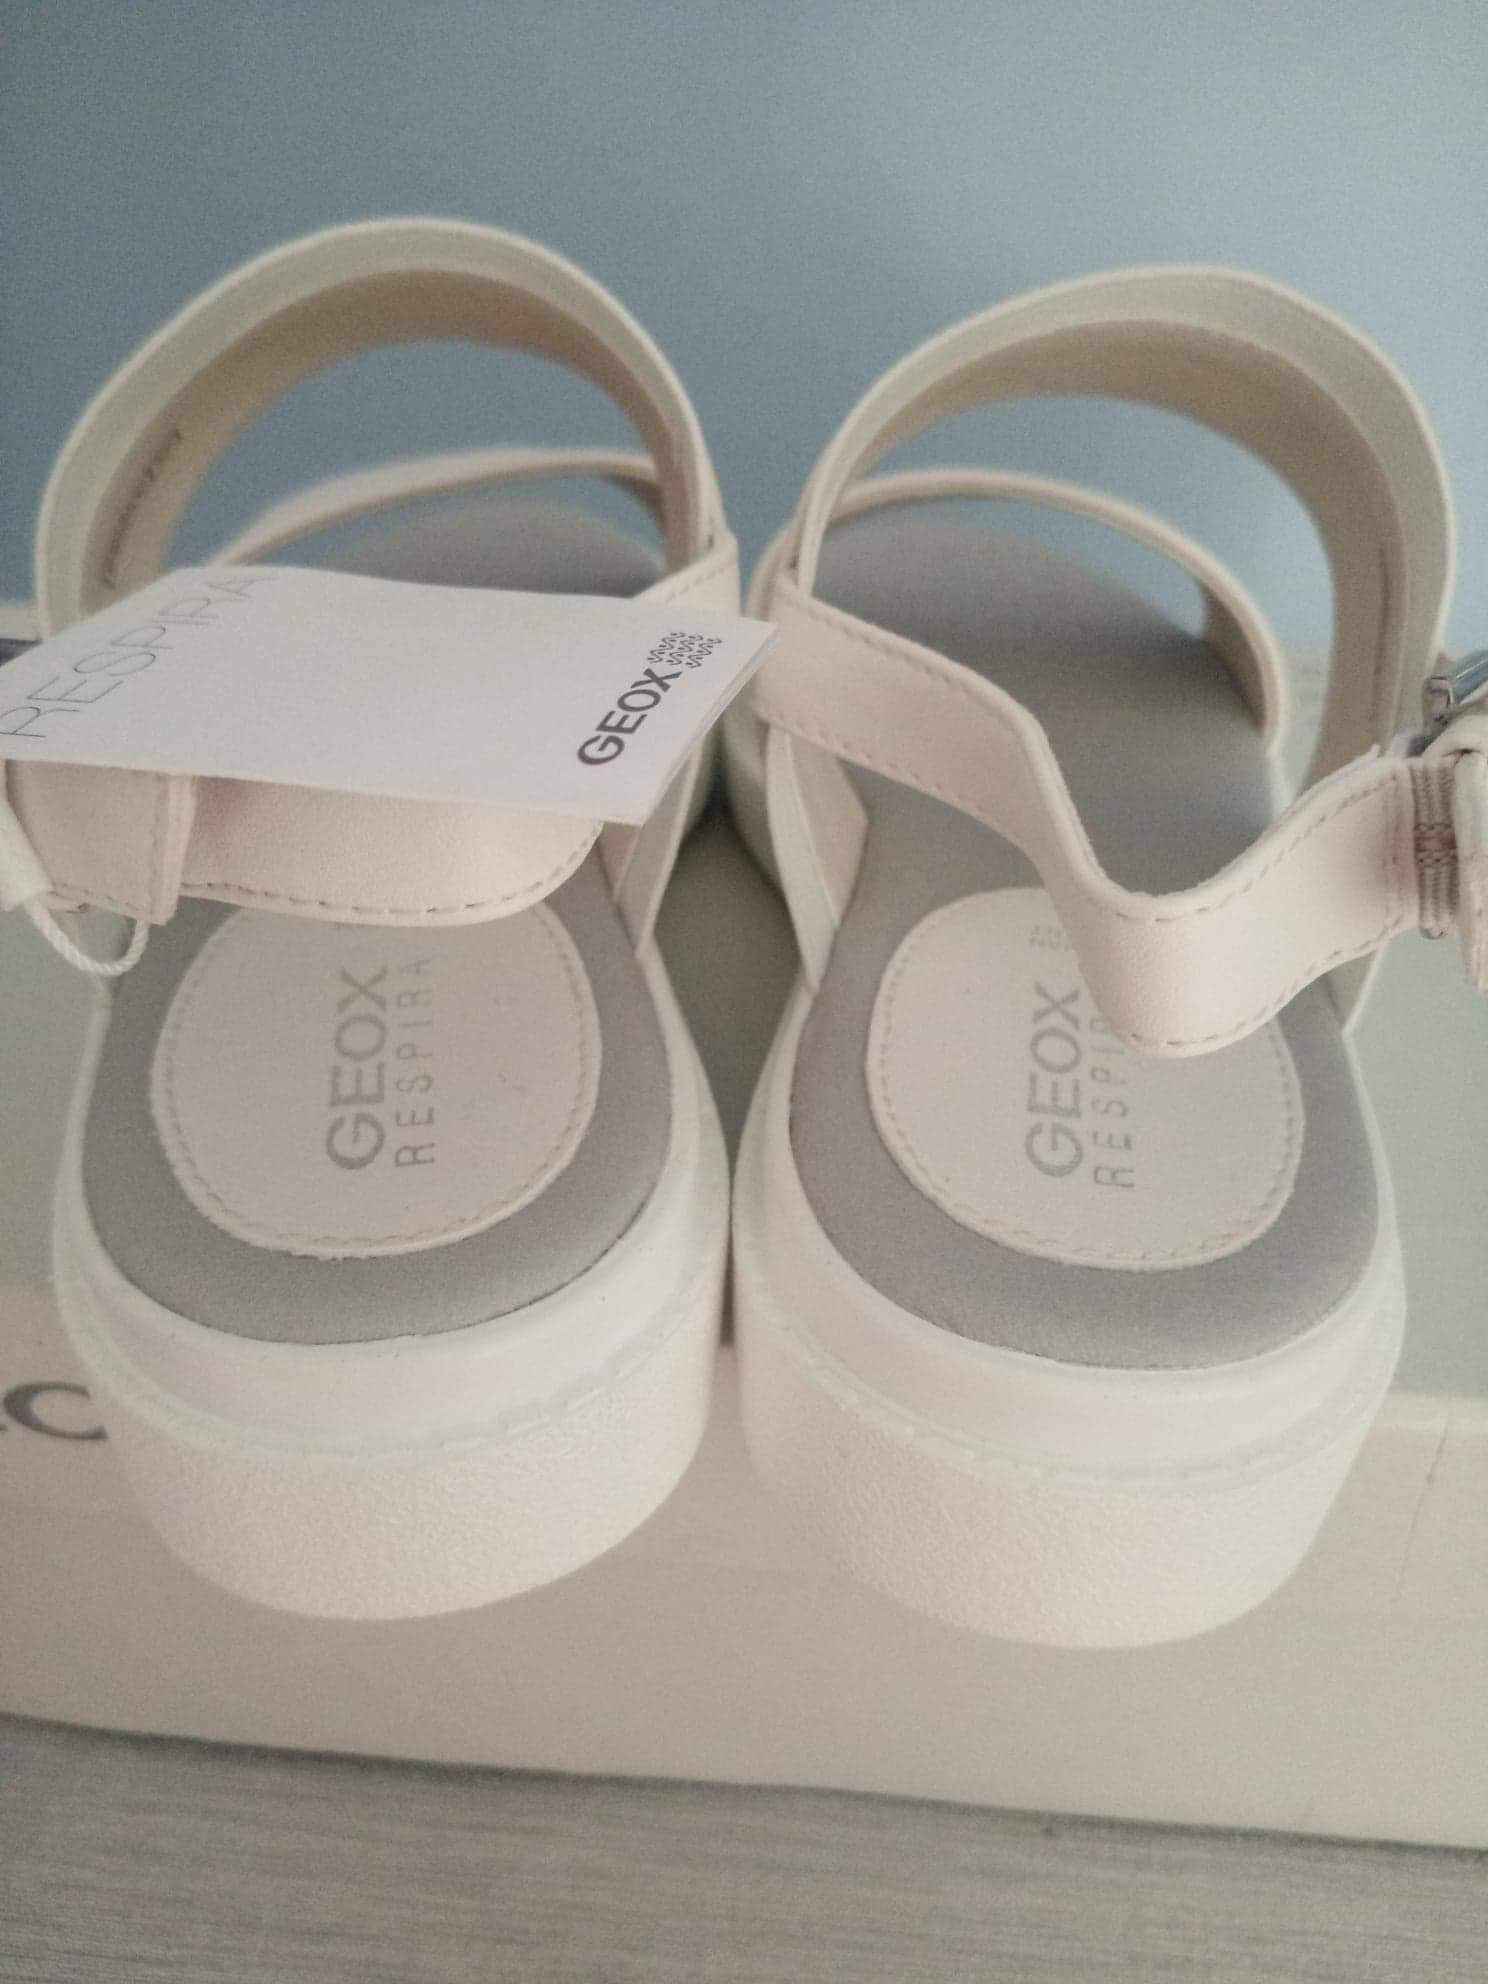 Sandały damskie marki Geox rozmiar 37